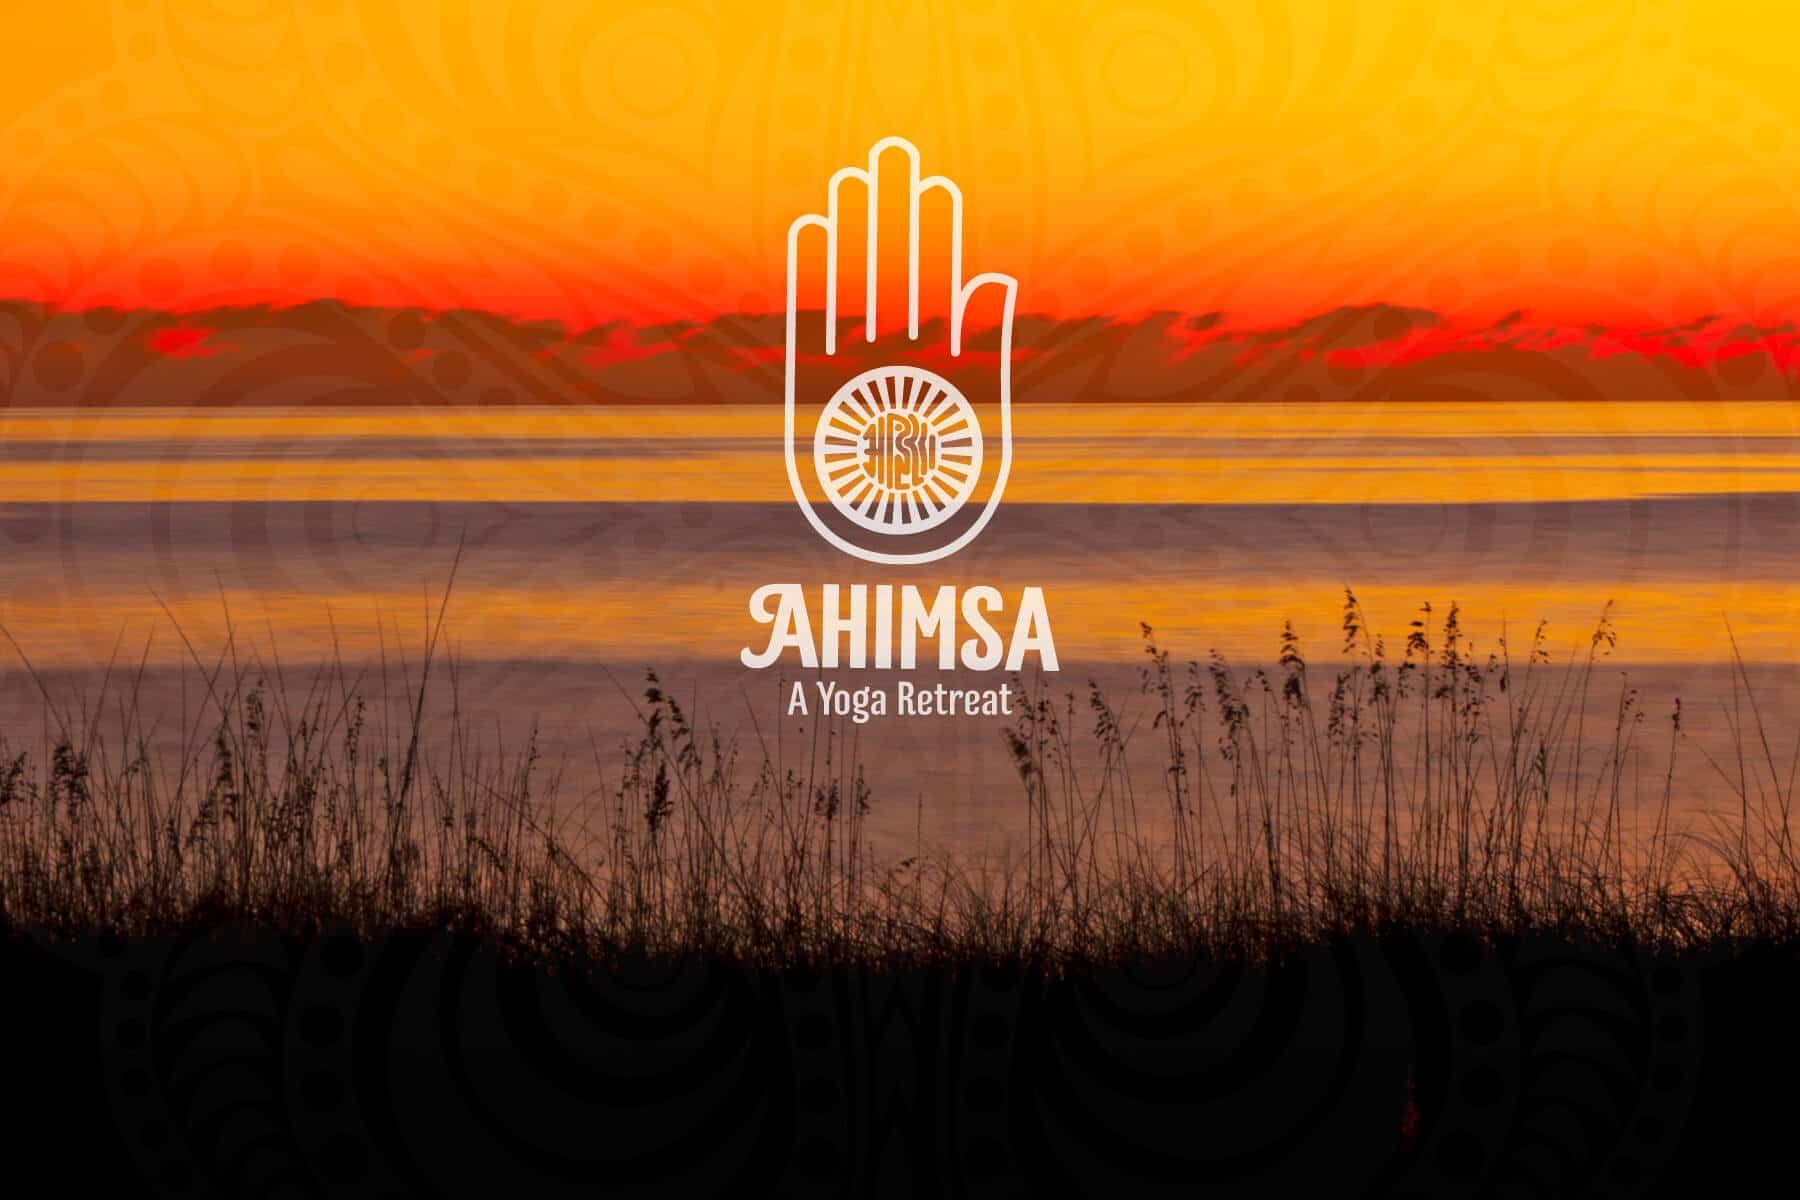 Vidéo "Ahimsa, a yoga retreat" de Bote Board